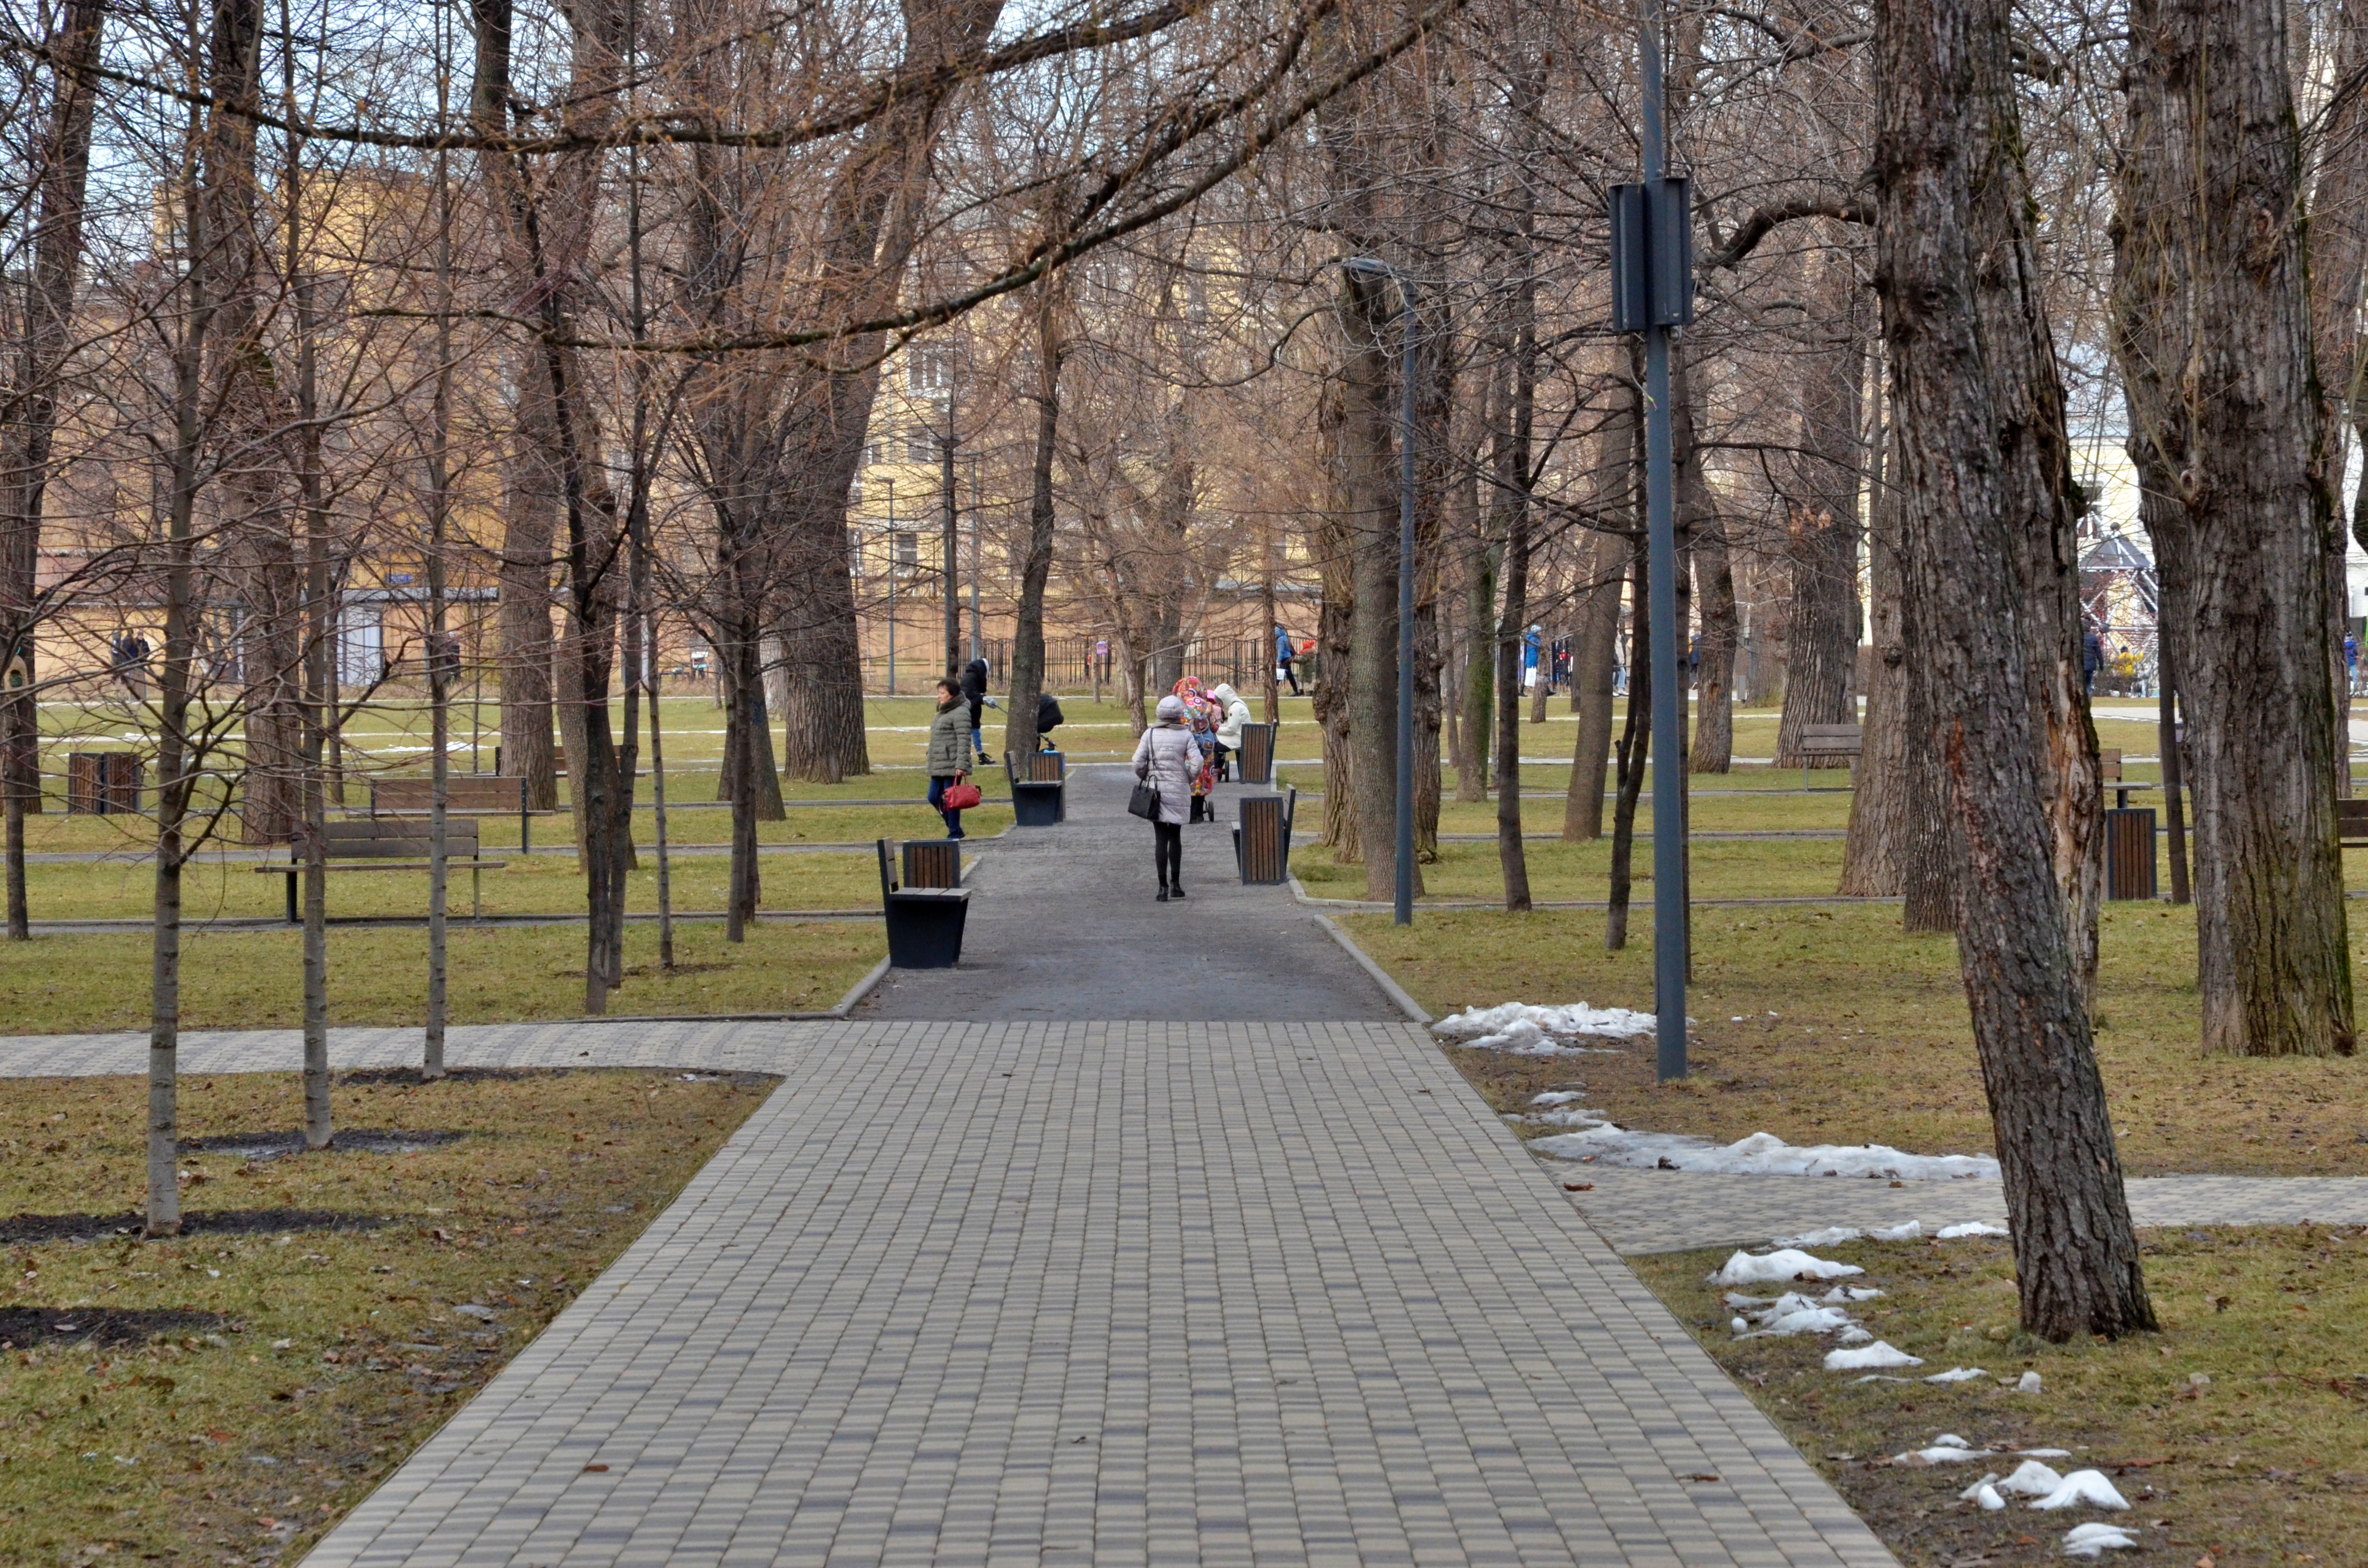 Посещение парков и зон отдыха запретили в Москве до 1 мая